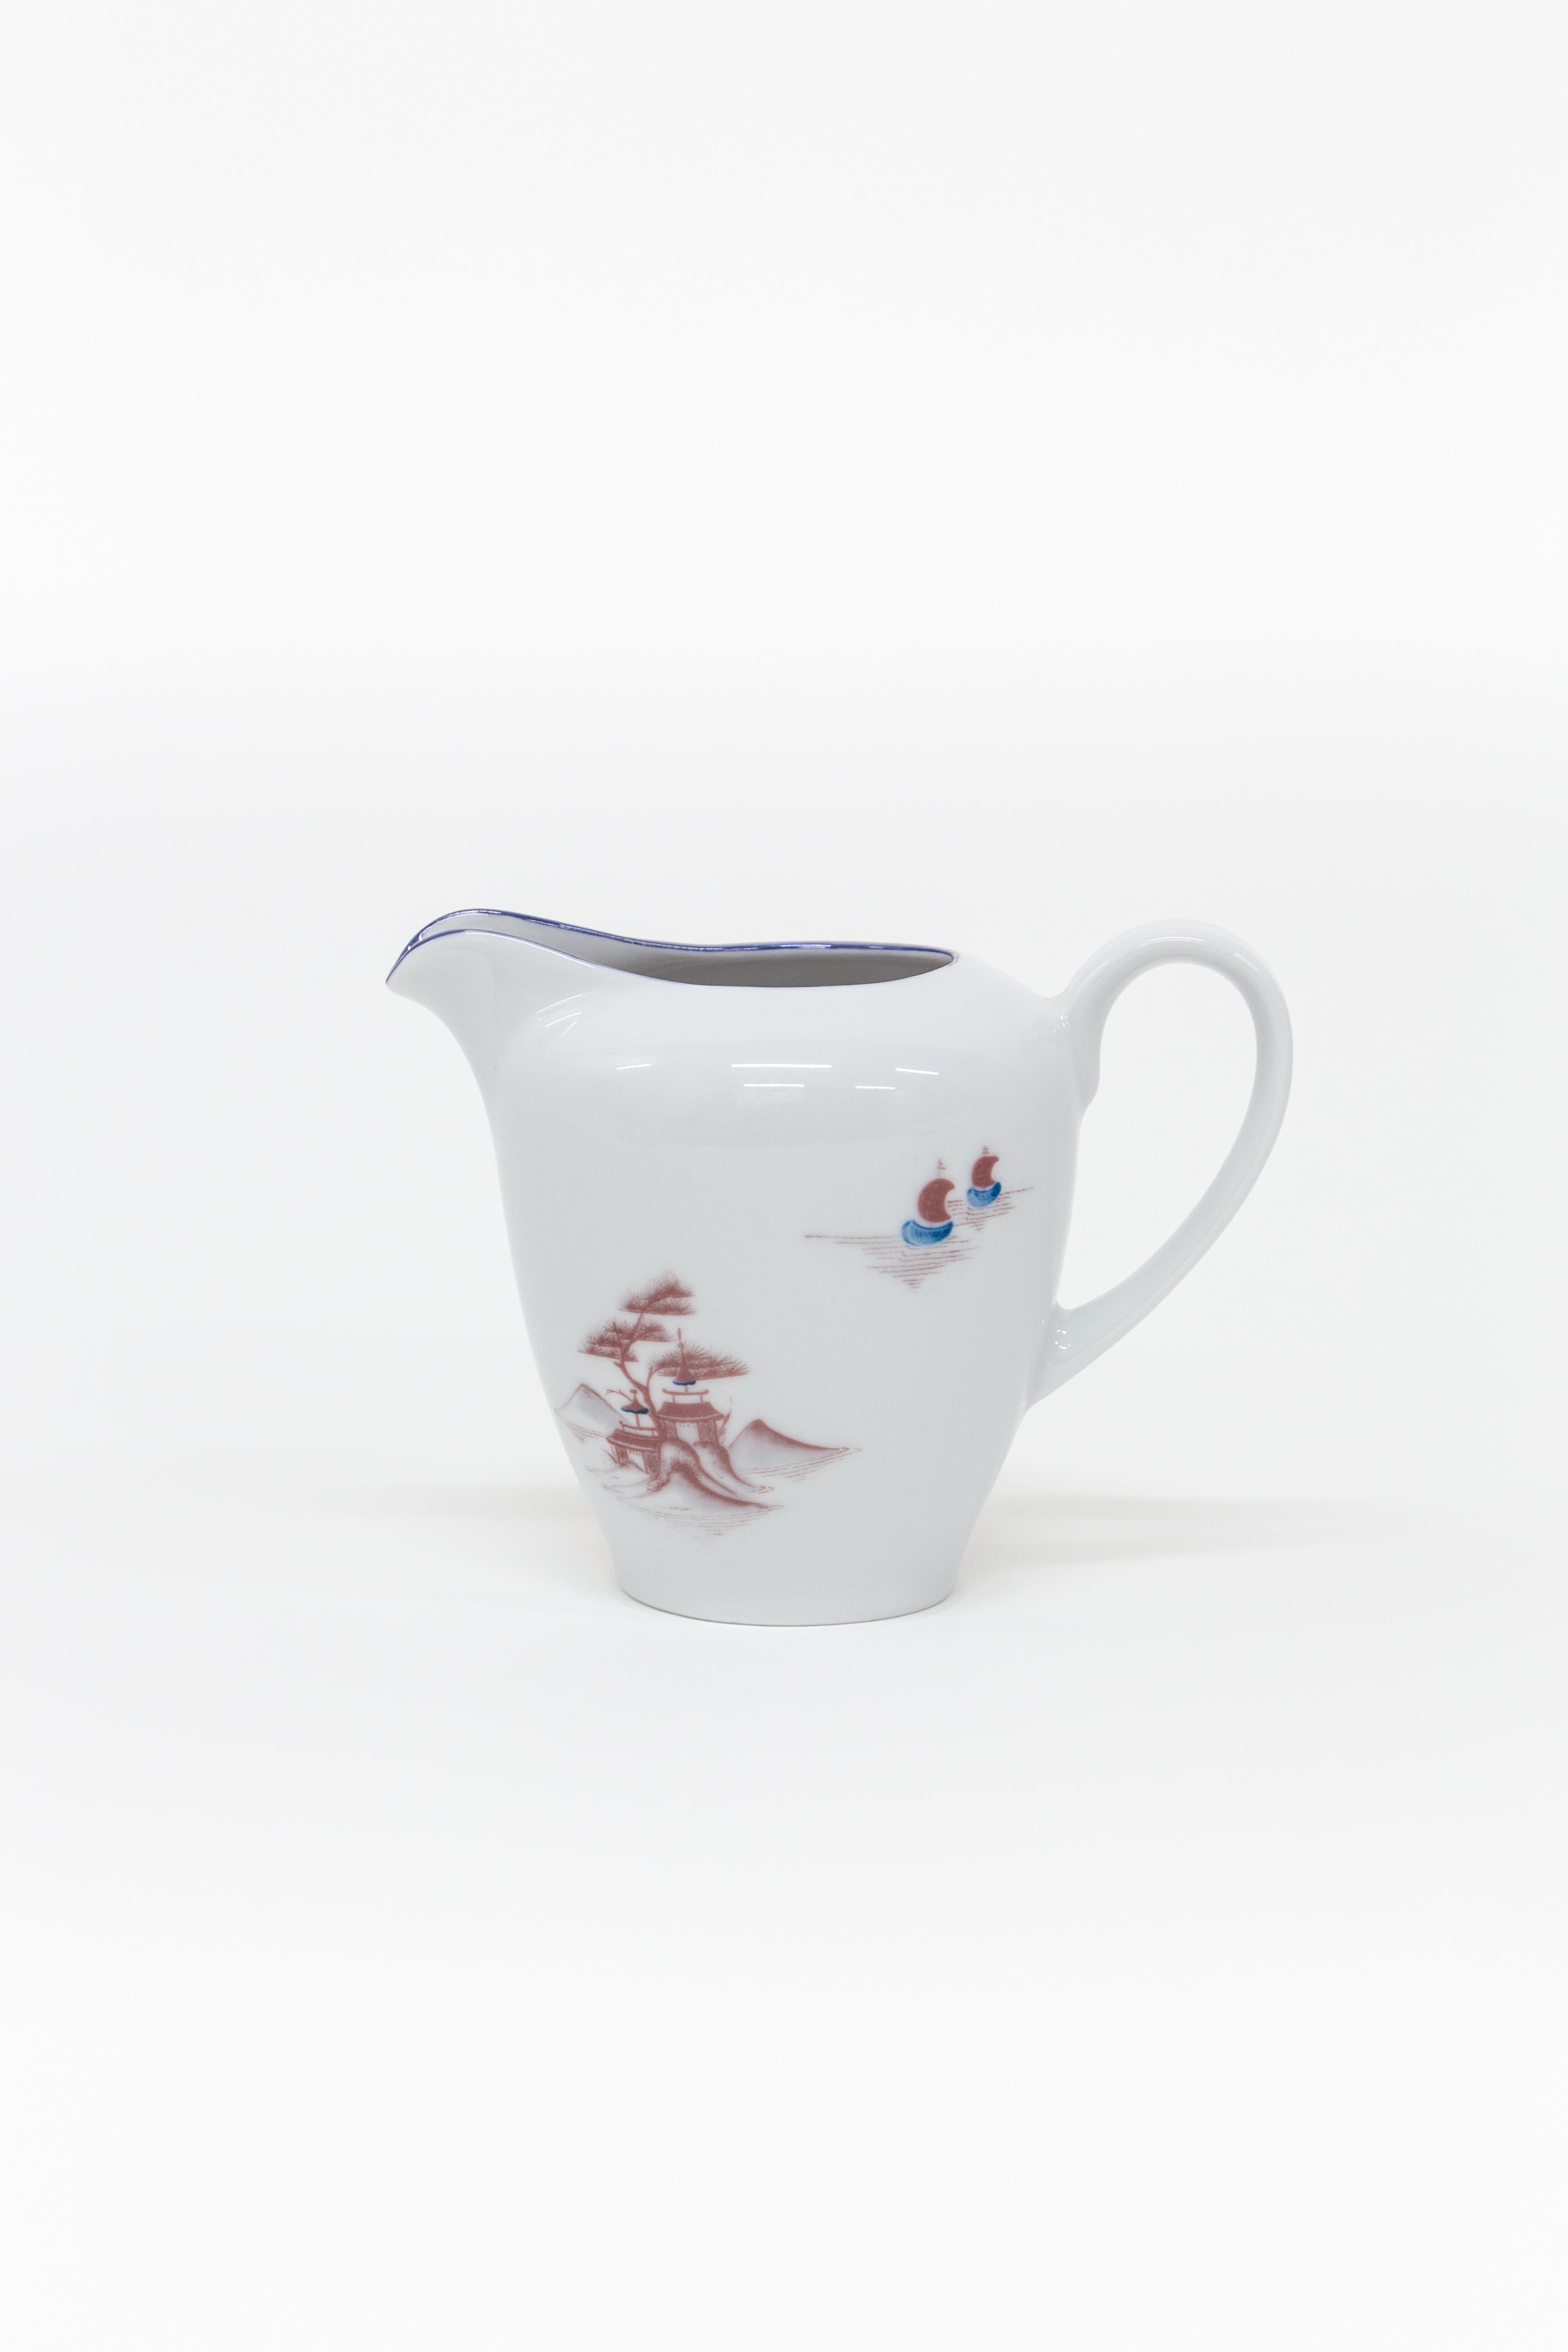 Dieses Tea Time Set ist Teil der Natsumi Porzellan Kollektion von Grand Tour by Vito Nesta. Die japanische Seelandschaft zeigt uns Figuren, die ihrem täglichen Leben nachgehen, Geishas, die sich unterhalten, Männer in kleinen Ruderbooten und andere